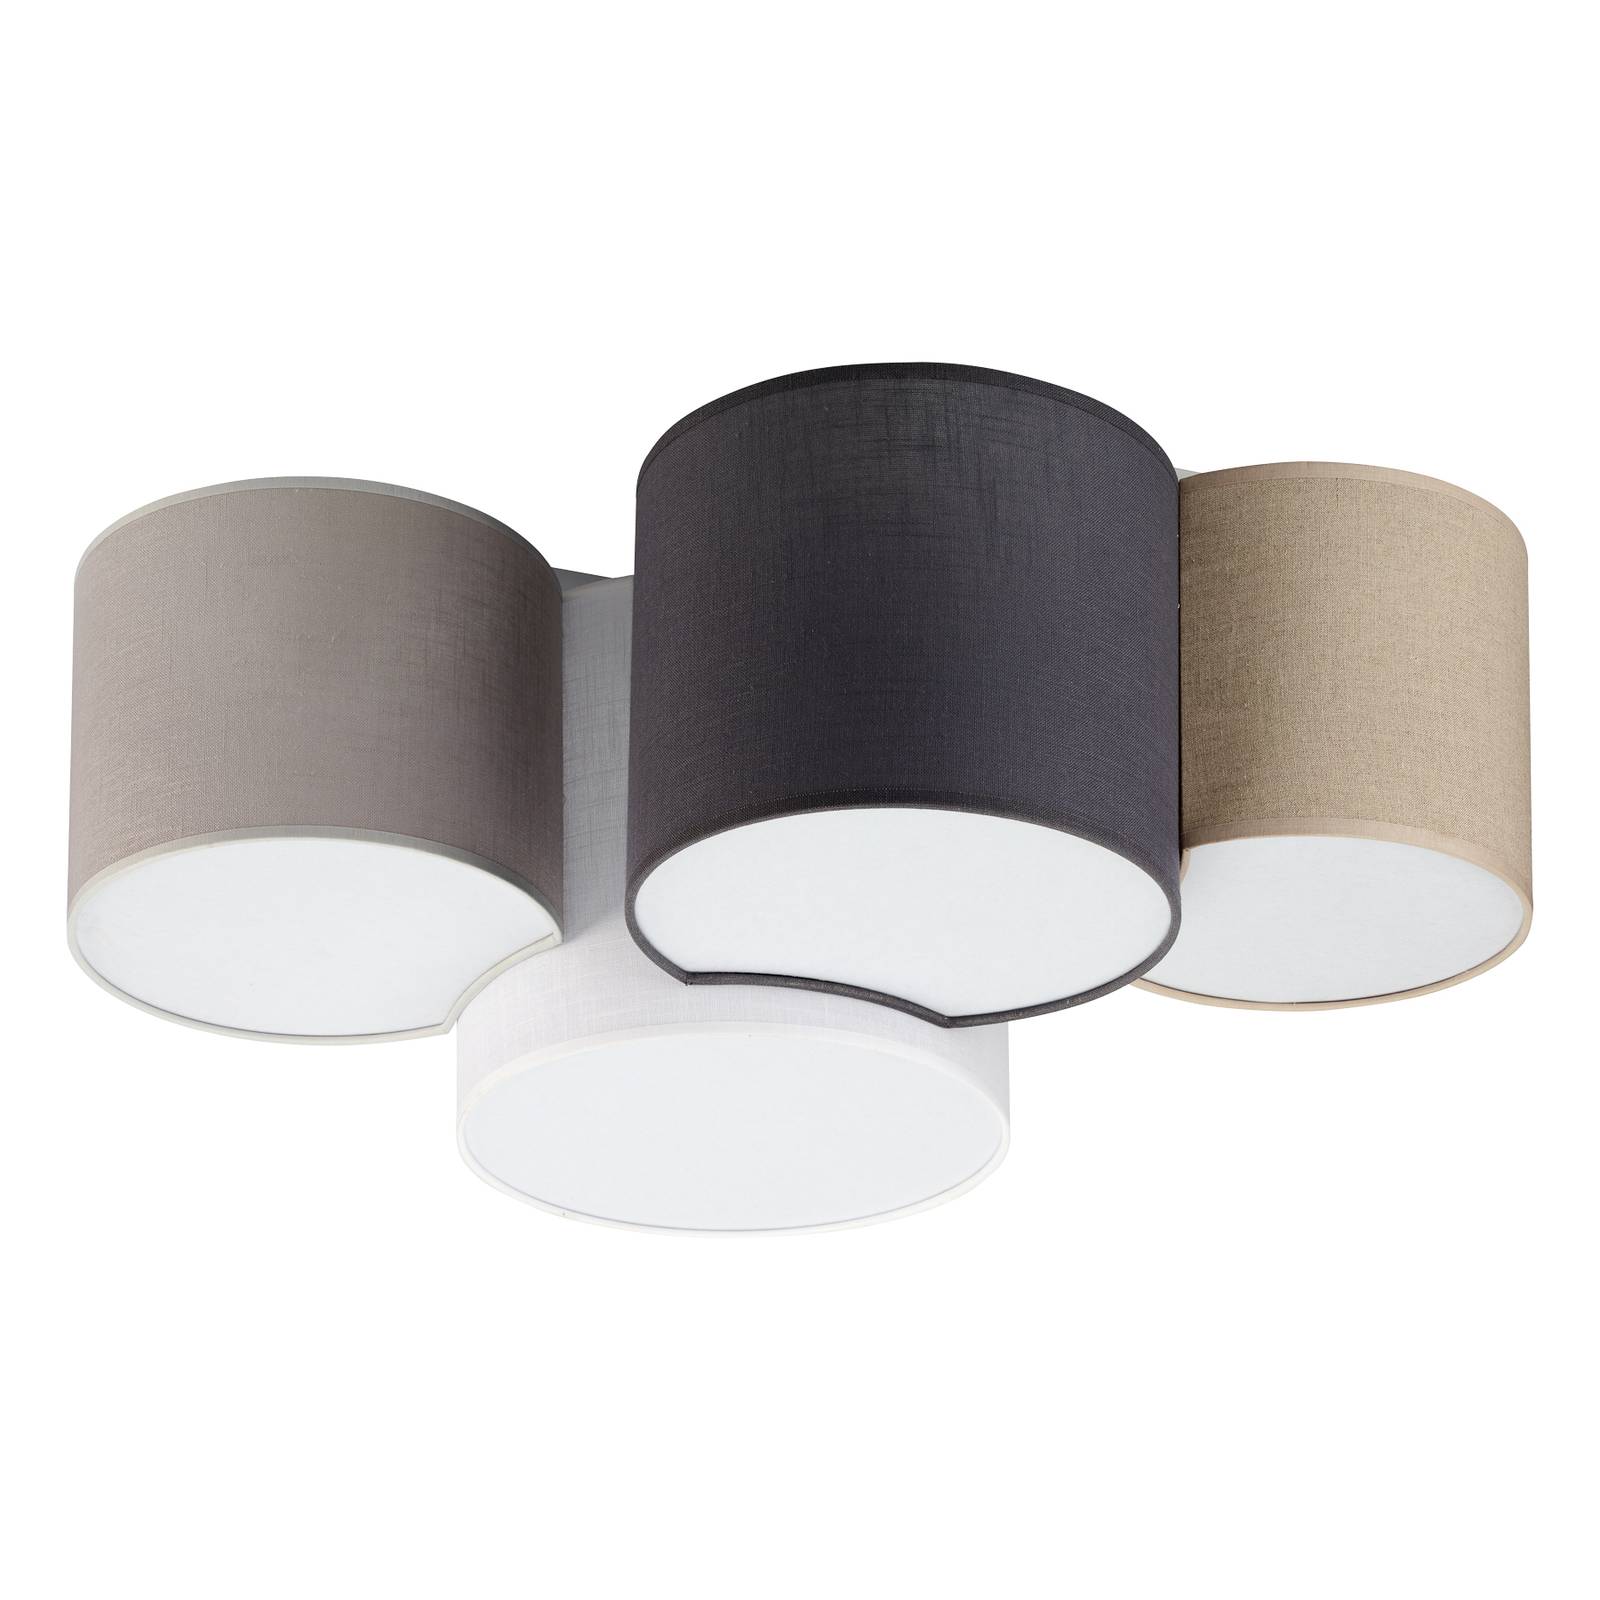 Plafondlamp Mona Colour, 4-lamps wit/bruin/grijs